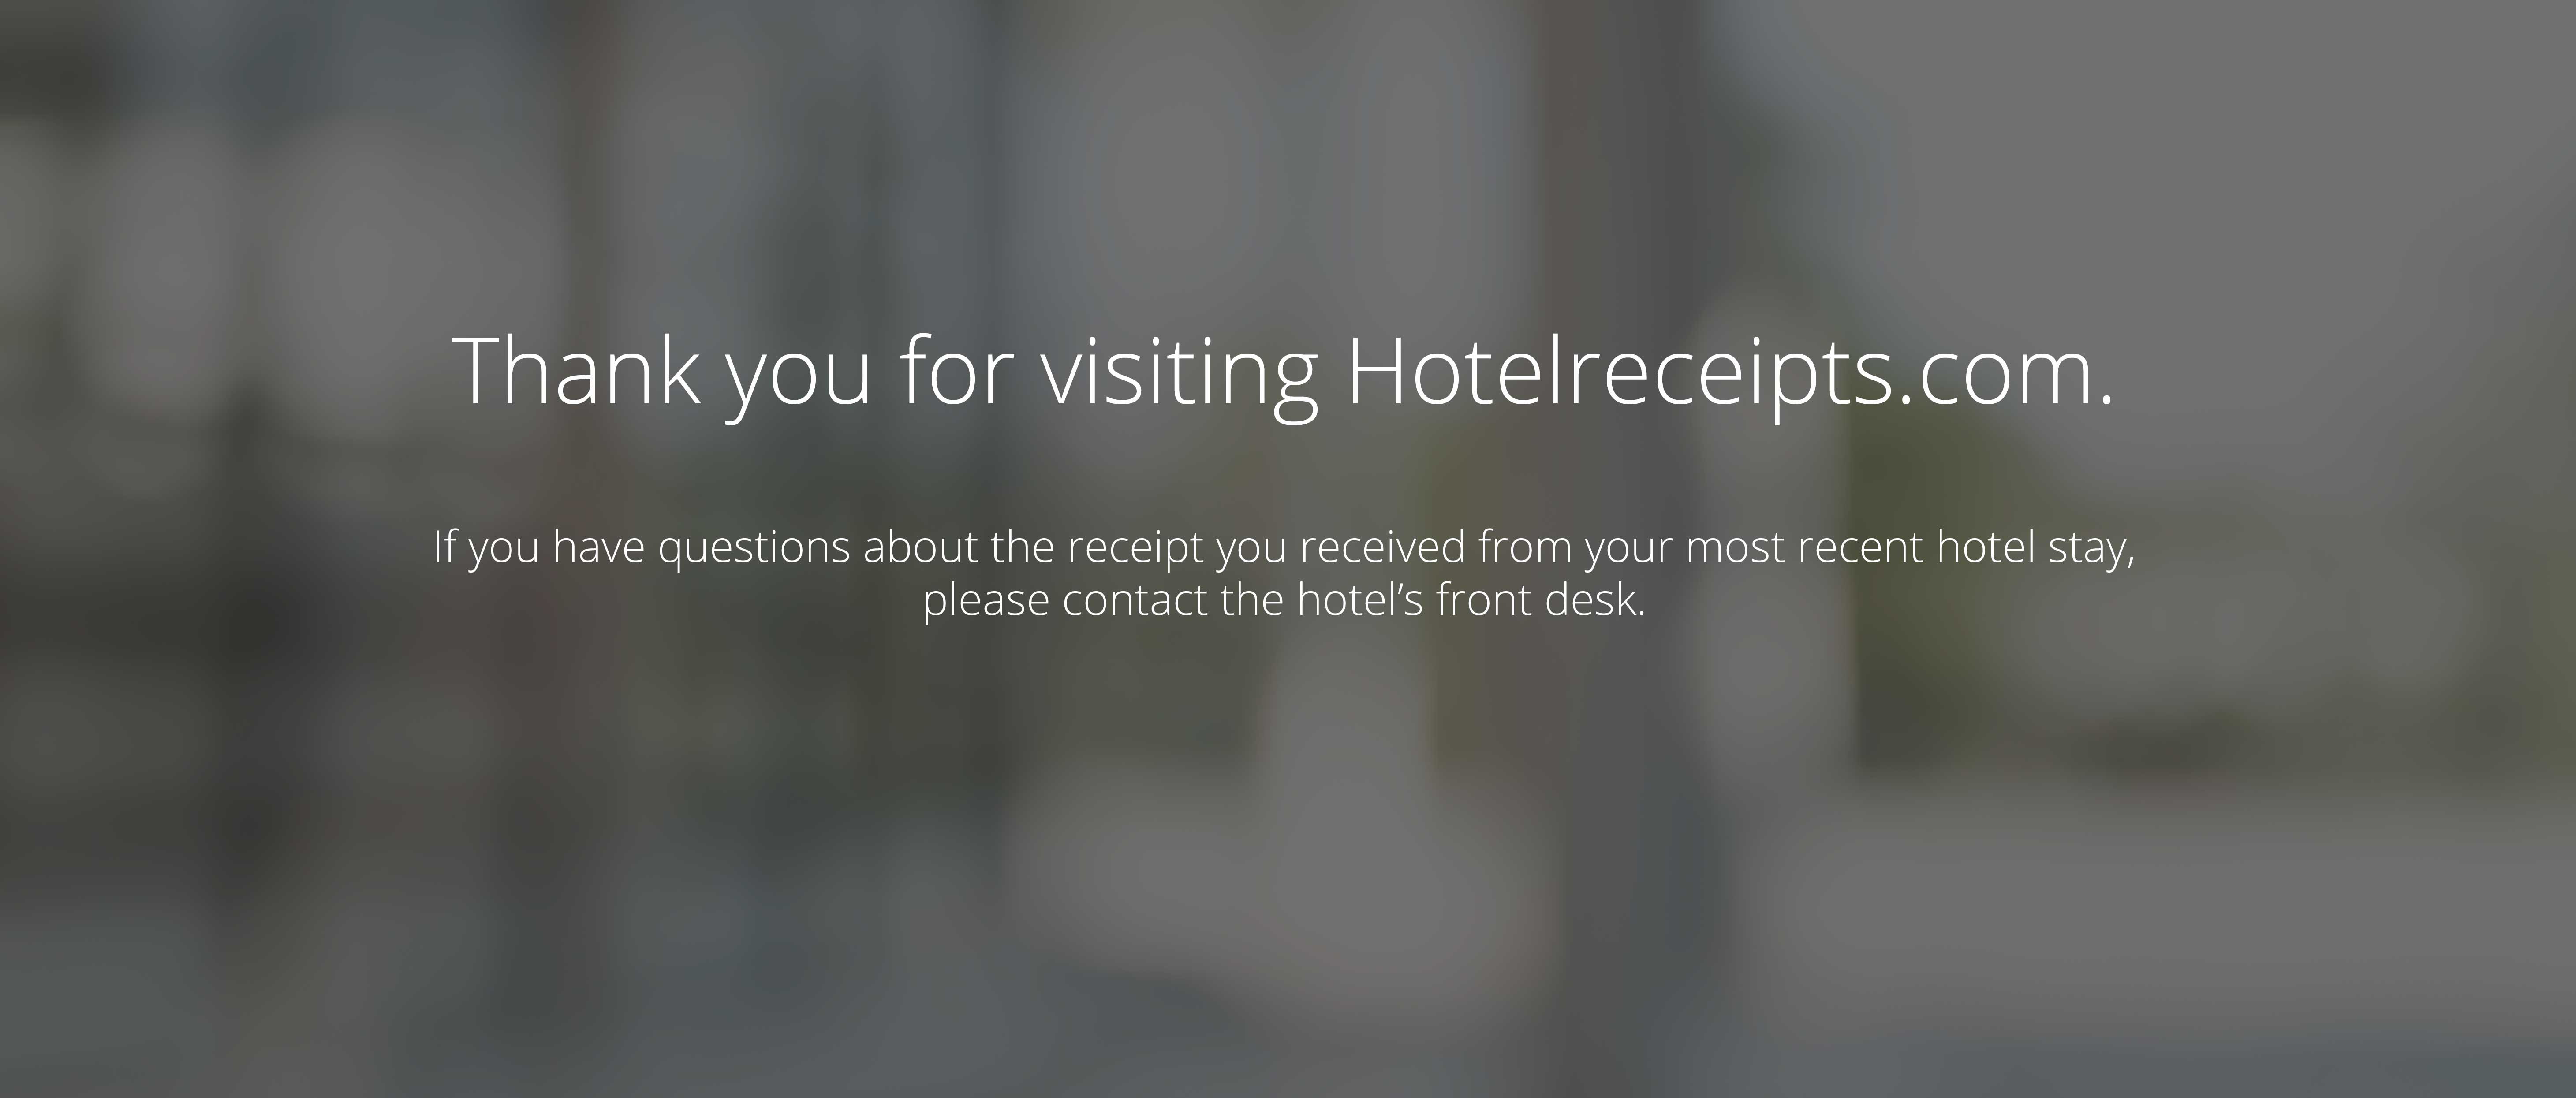 Hotel Receipts